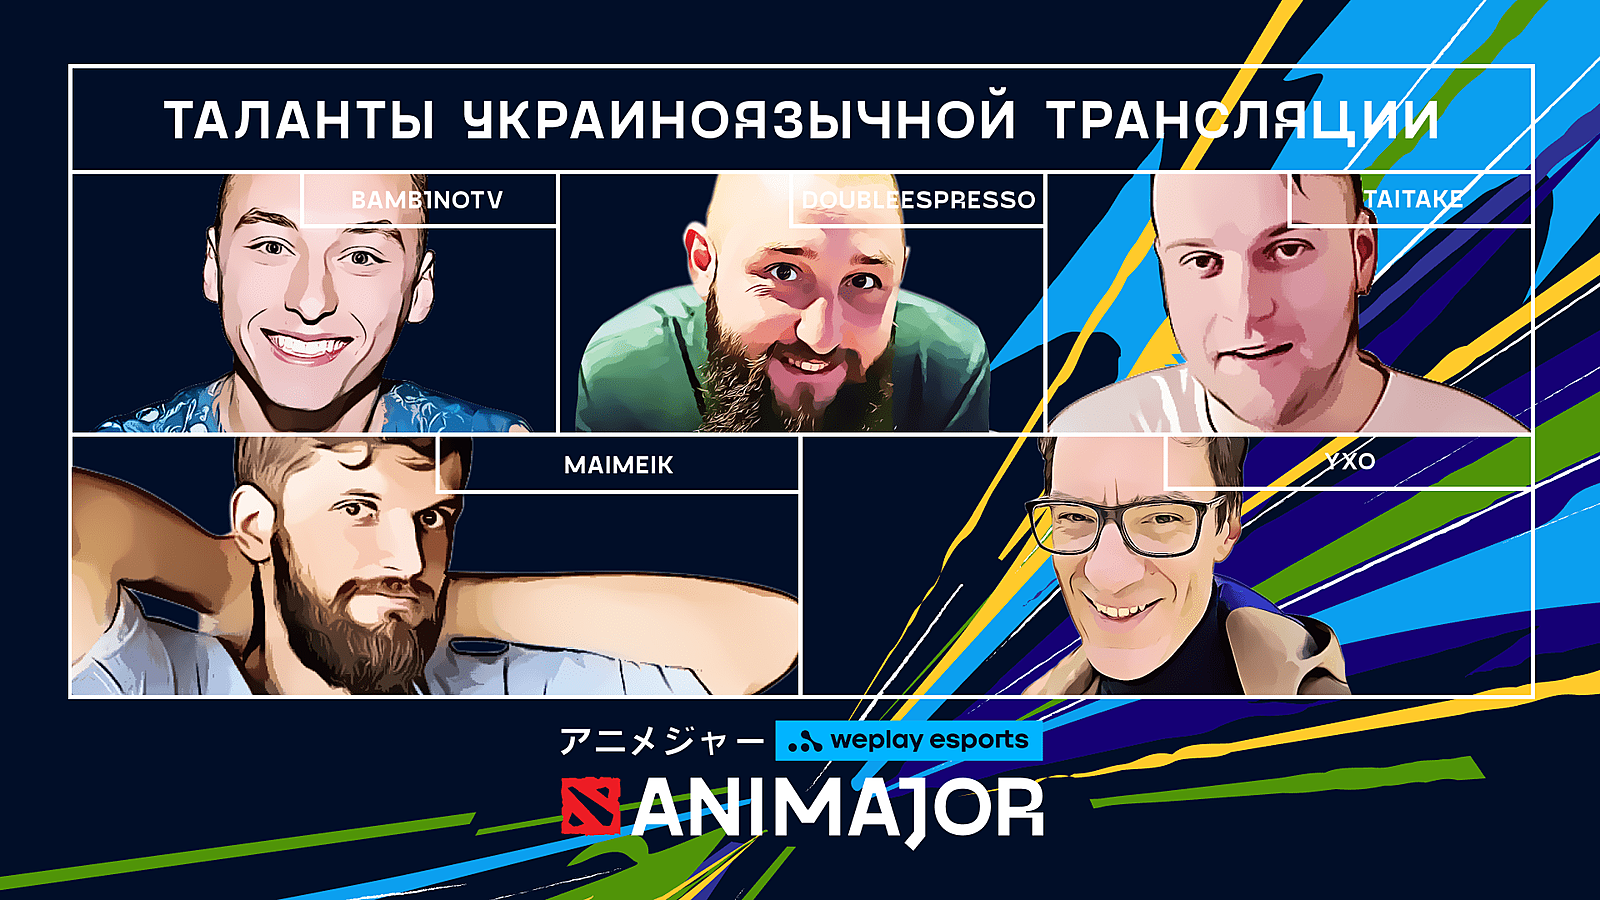 YXo и Feaver будут освещать WePlay AniMajor — представлен каст украиноязычной трансляции